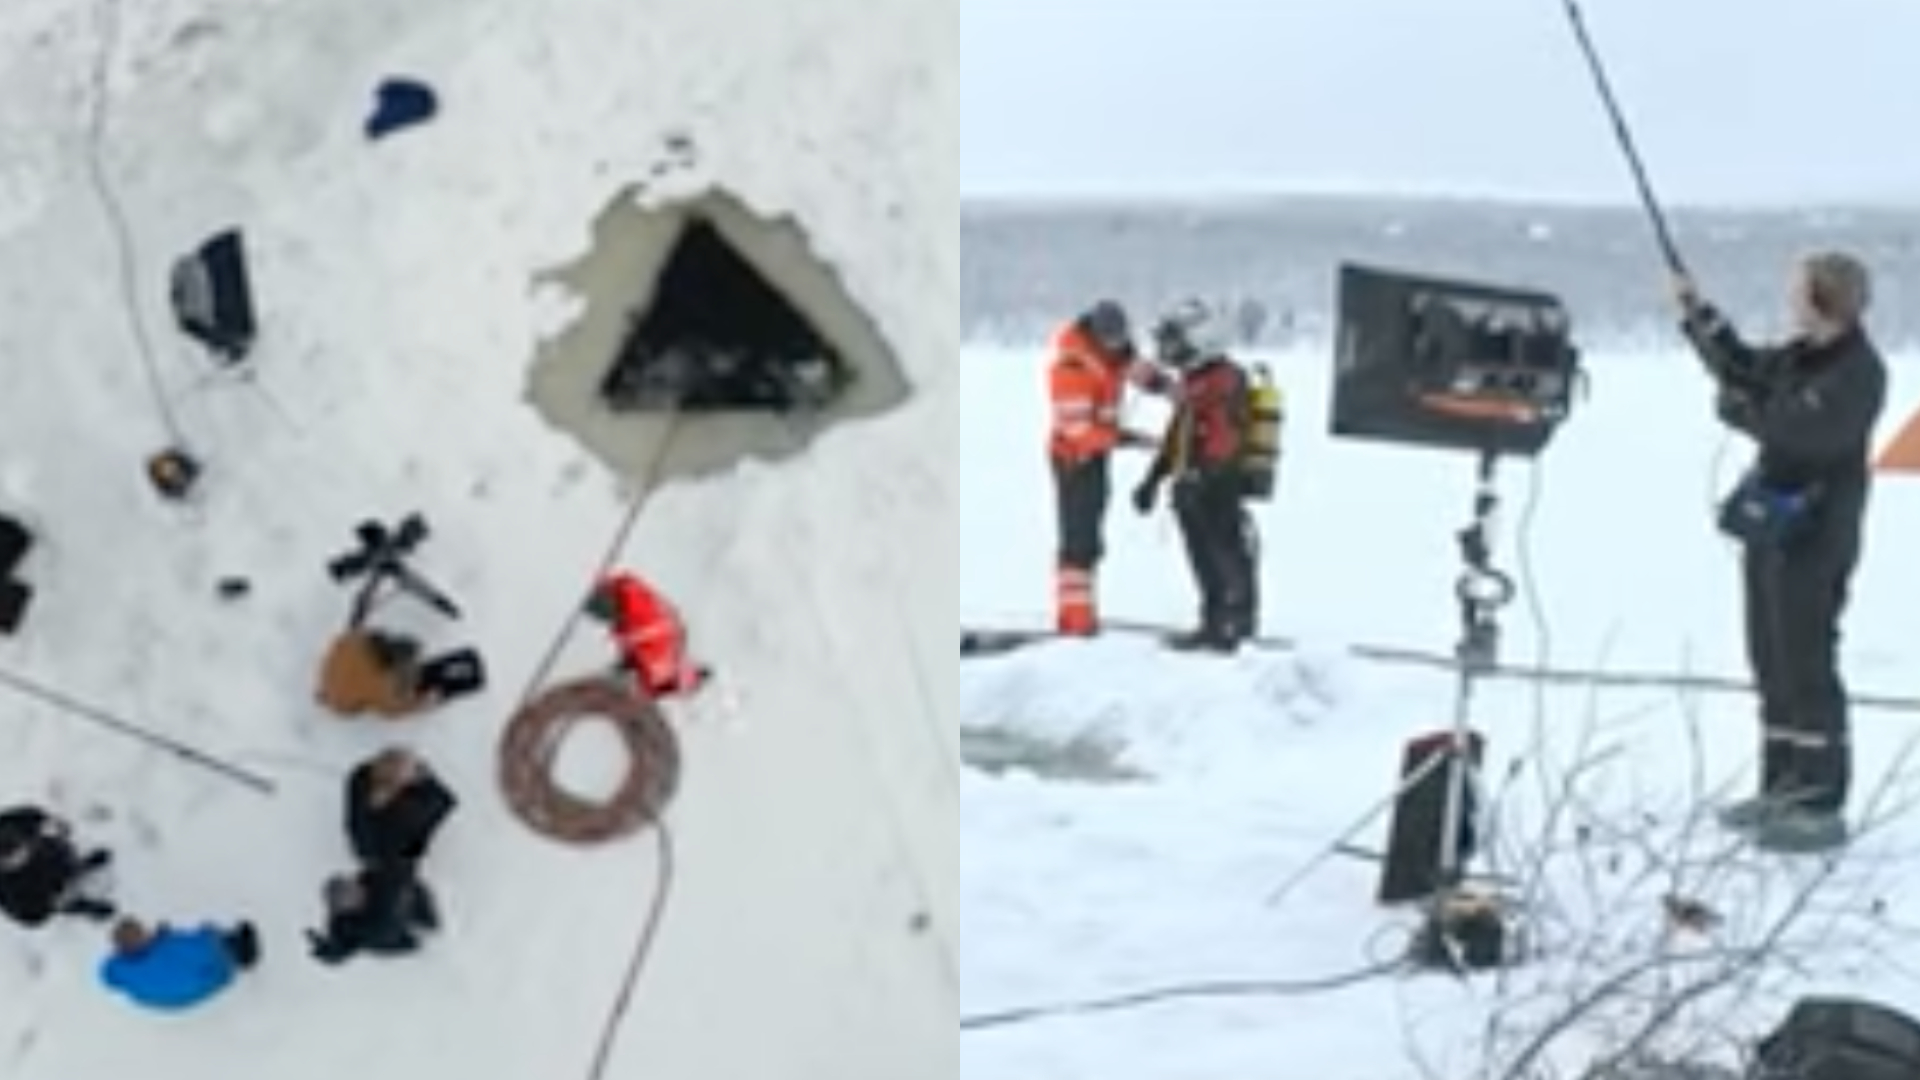 Vídeo: Especialistas encontram sinais de óvni que teria caído em lago na Noruega há 77 anos; assista